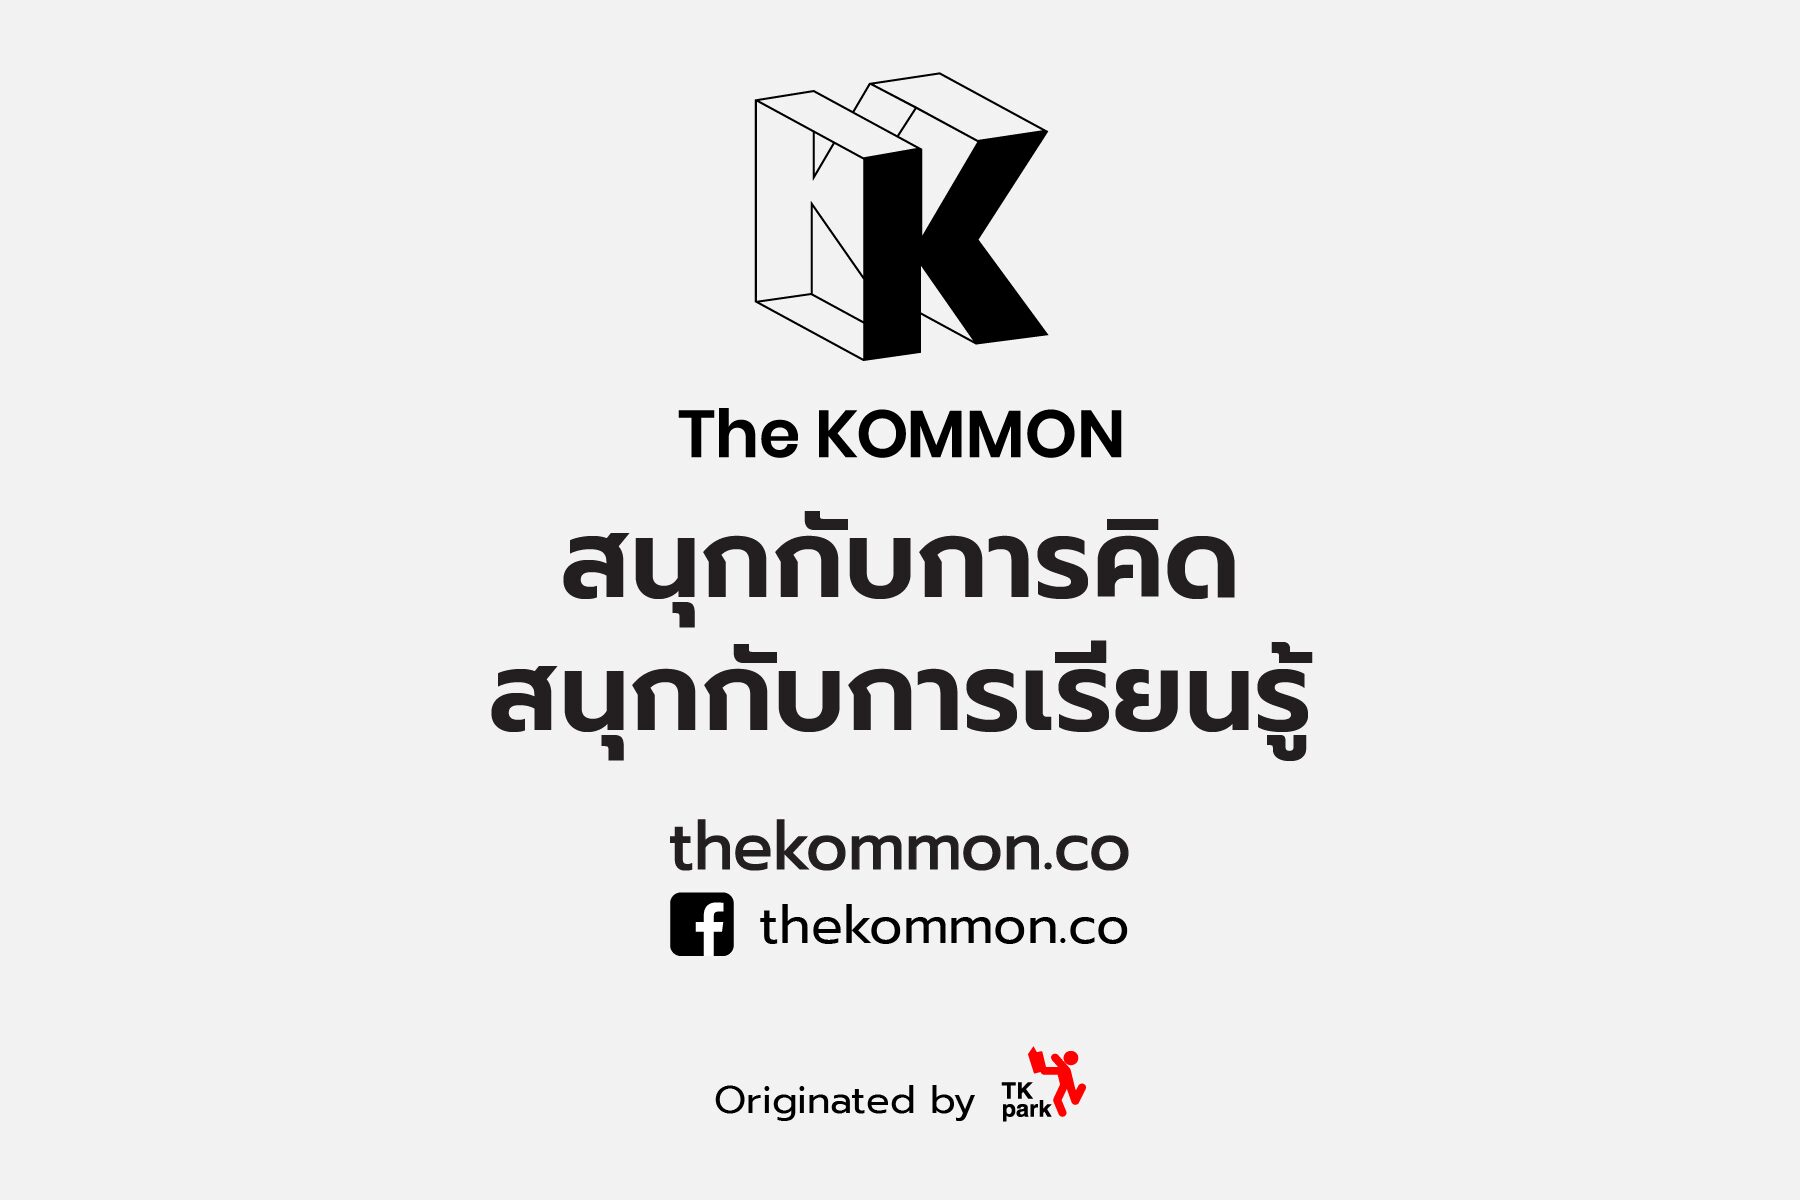 เปิดตัว "The KOMMON" เว็บไซต์ใหม่ของ TK Park ตอบโจทย์การเรียนรู้แบบเกาะติดเทรนด์